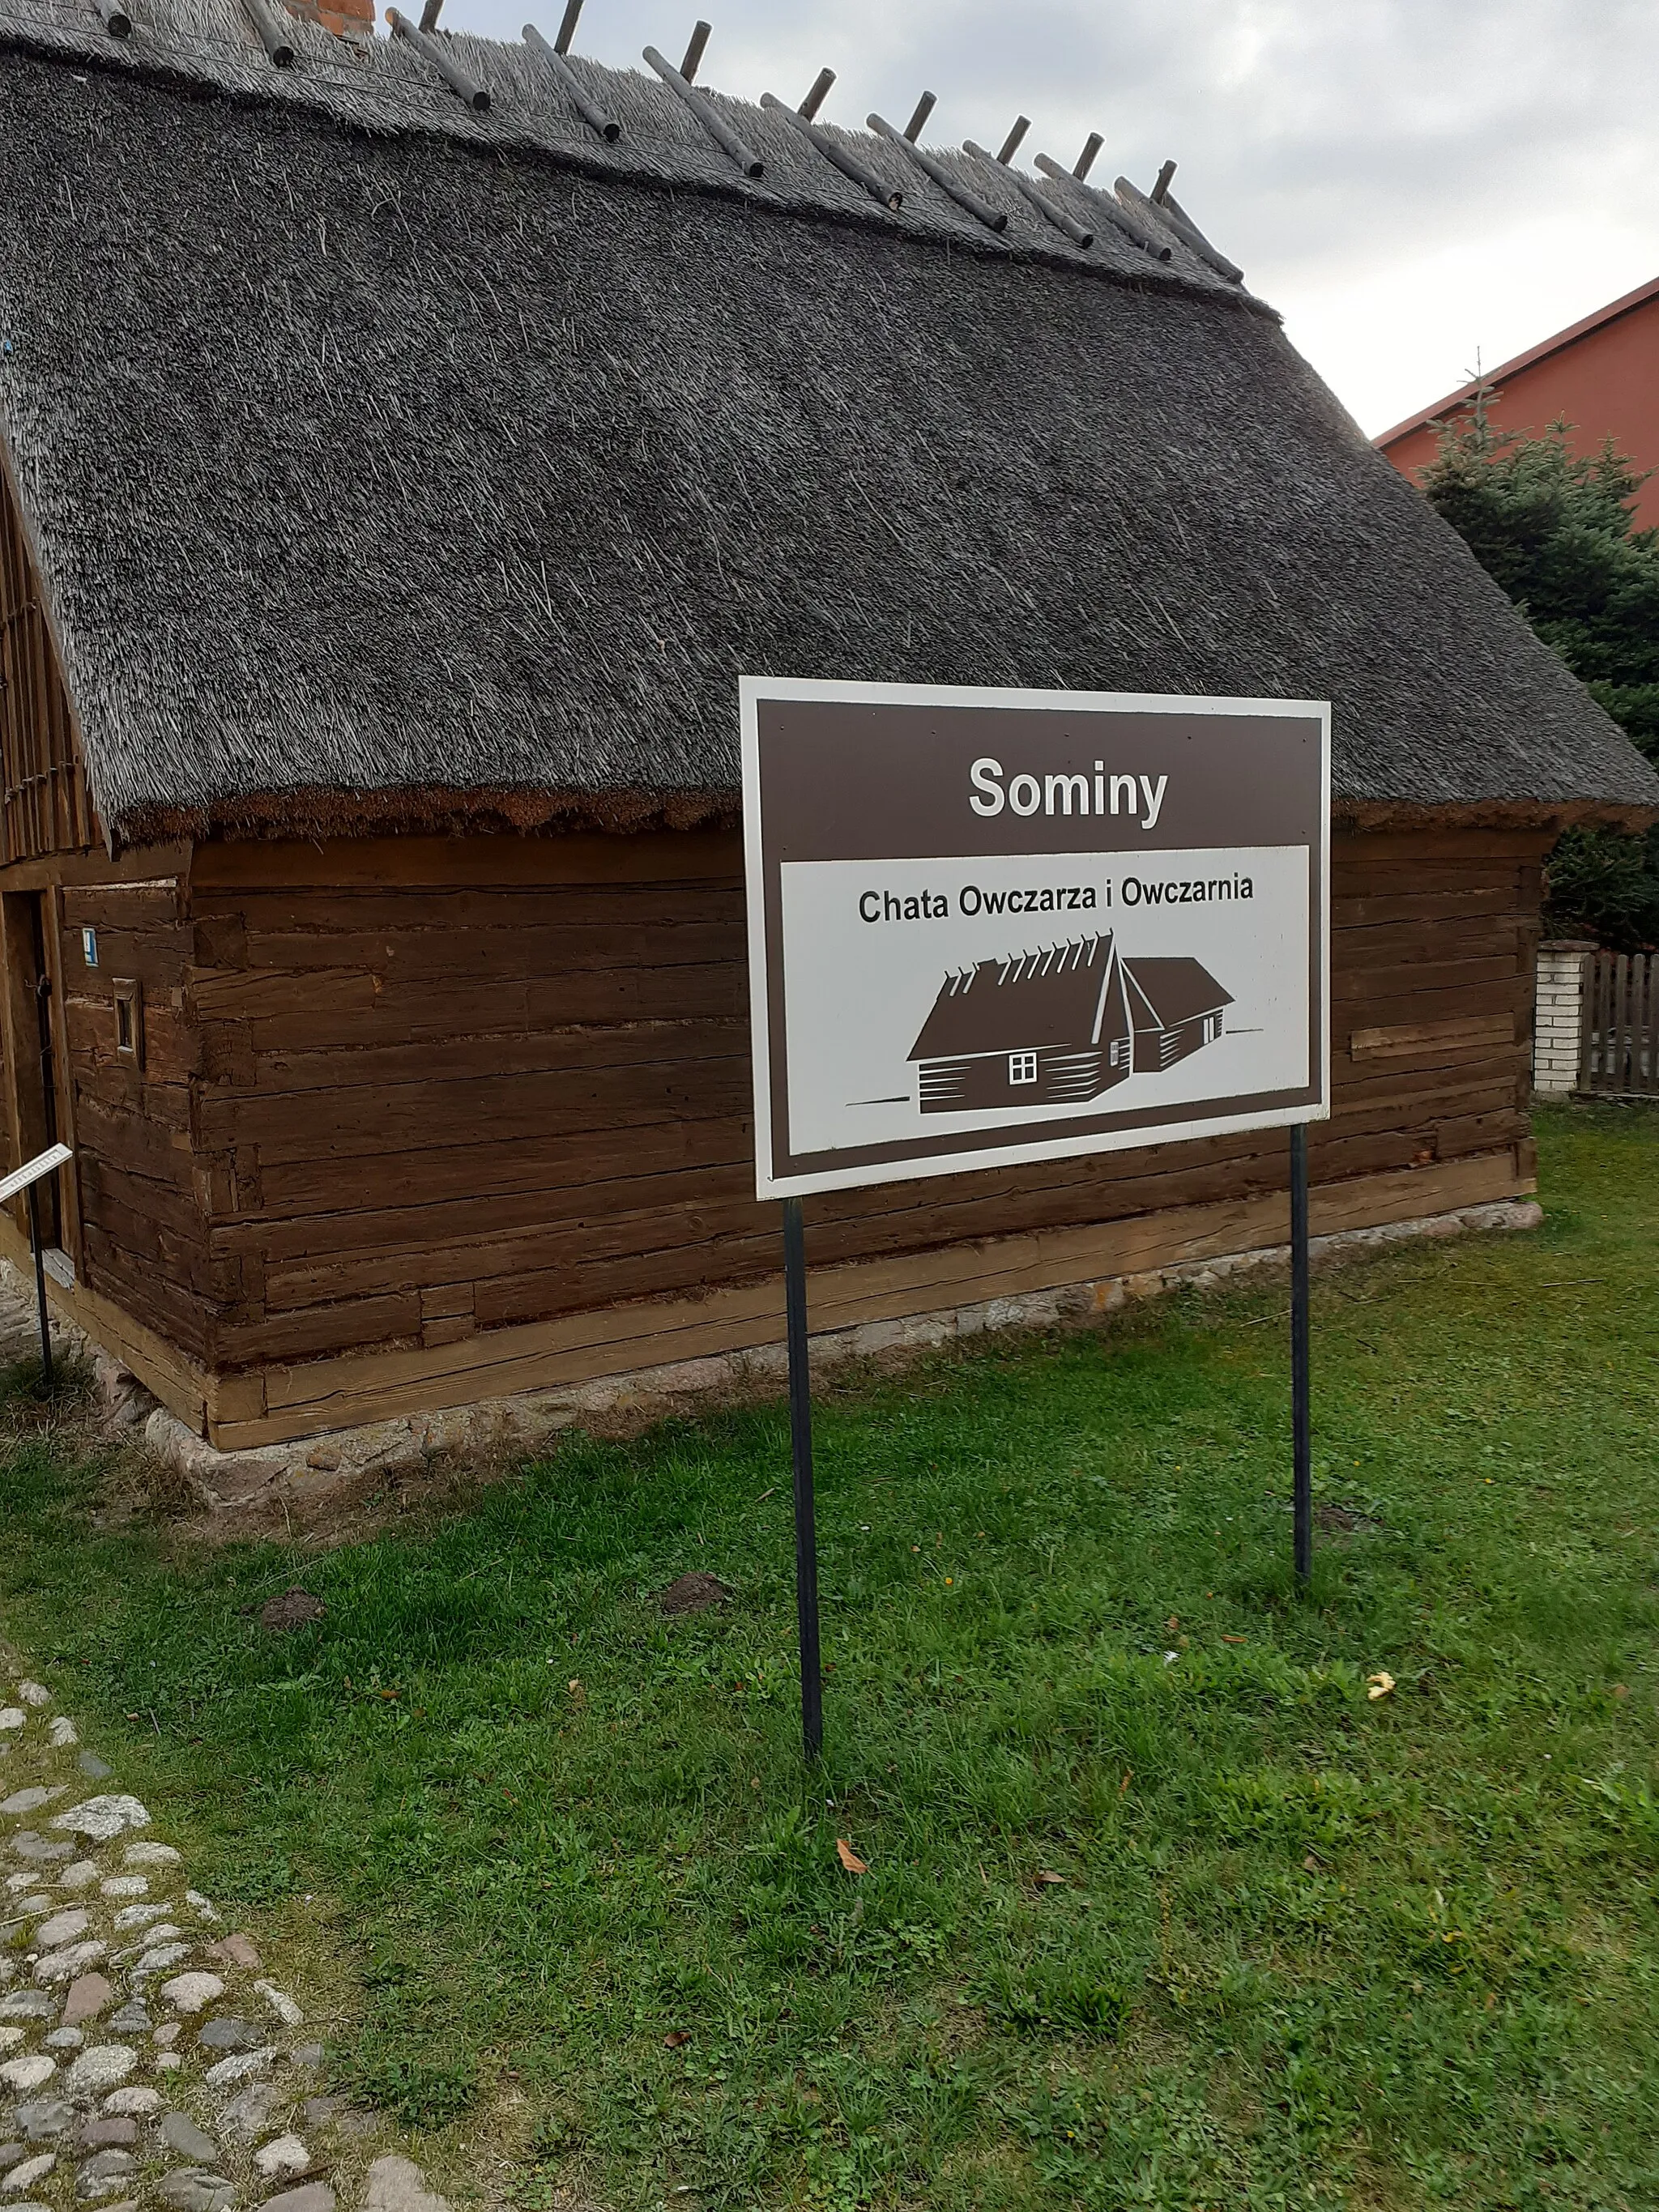 Photo showing: Chata owczarza w miejscowości  Sominy